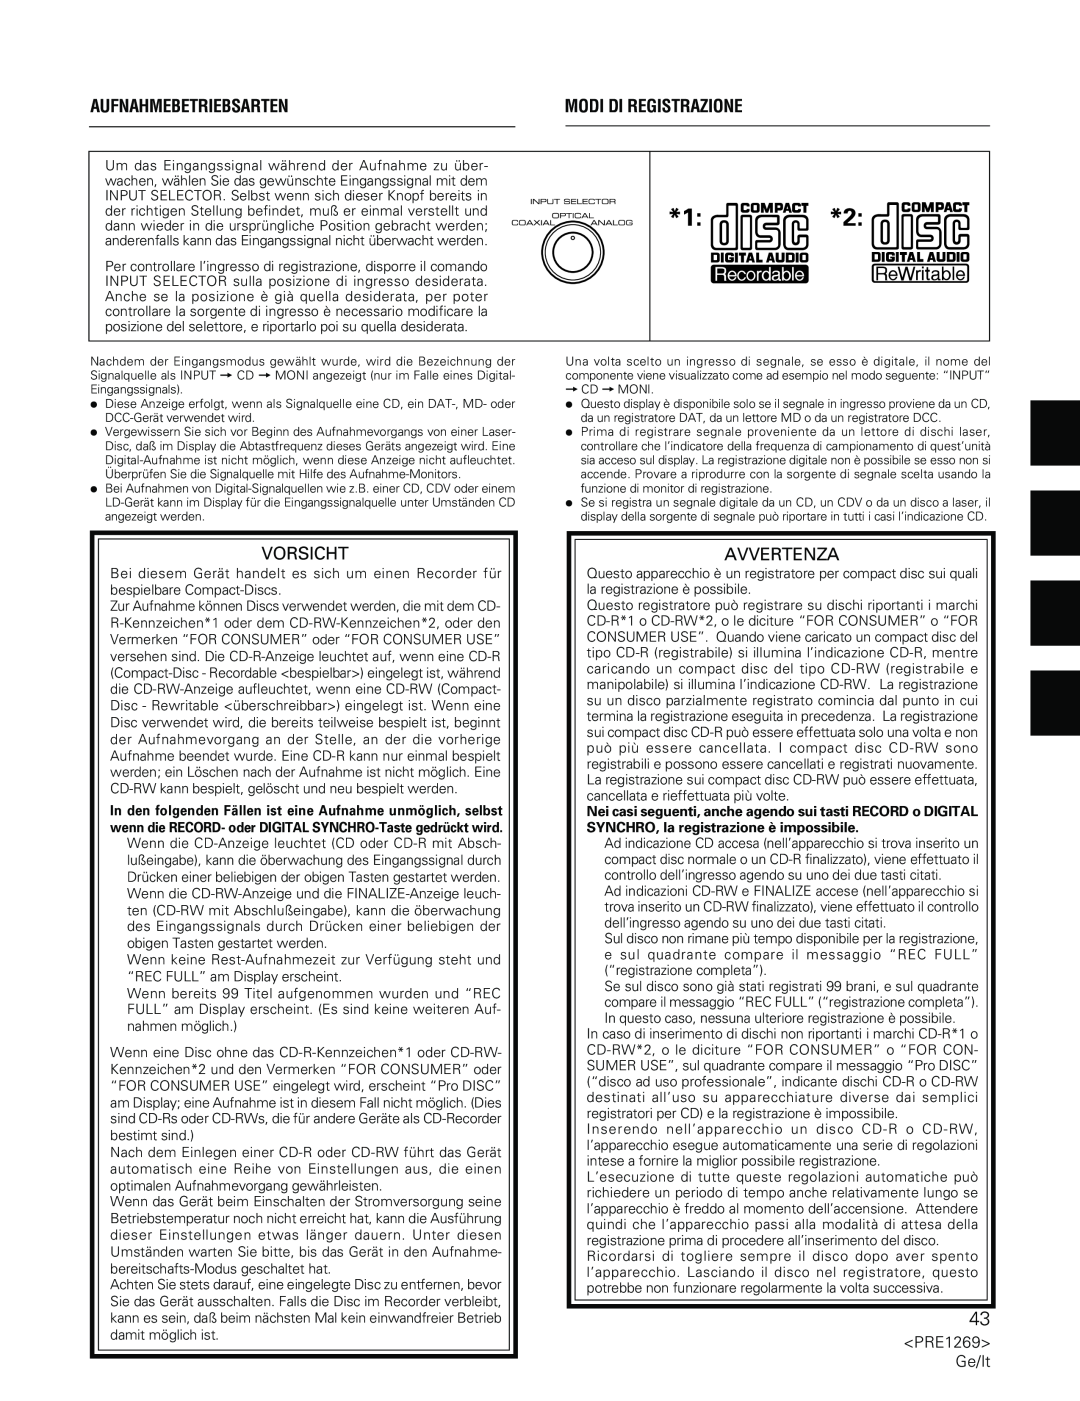 Pioneer PDR-555RW operating instructions Aufnahmebetriebsarten, Modi Di Registrazione, Vorsicht, Avvertenza 